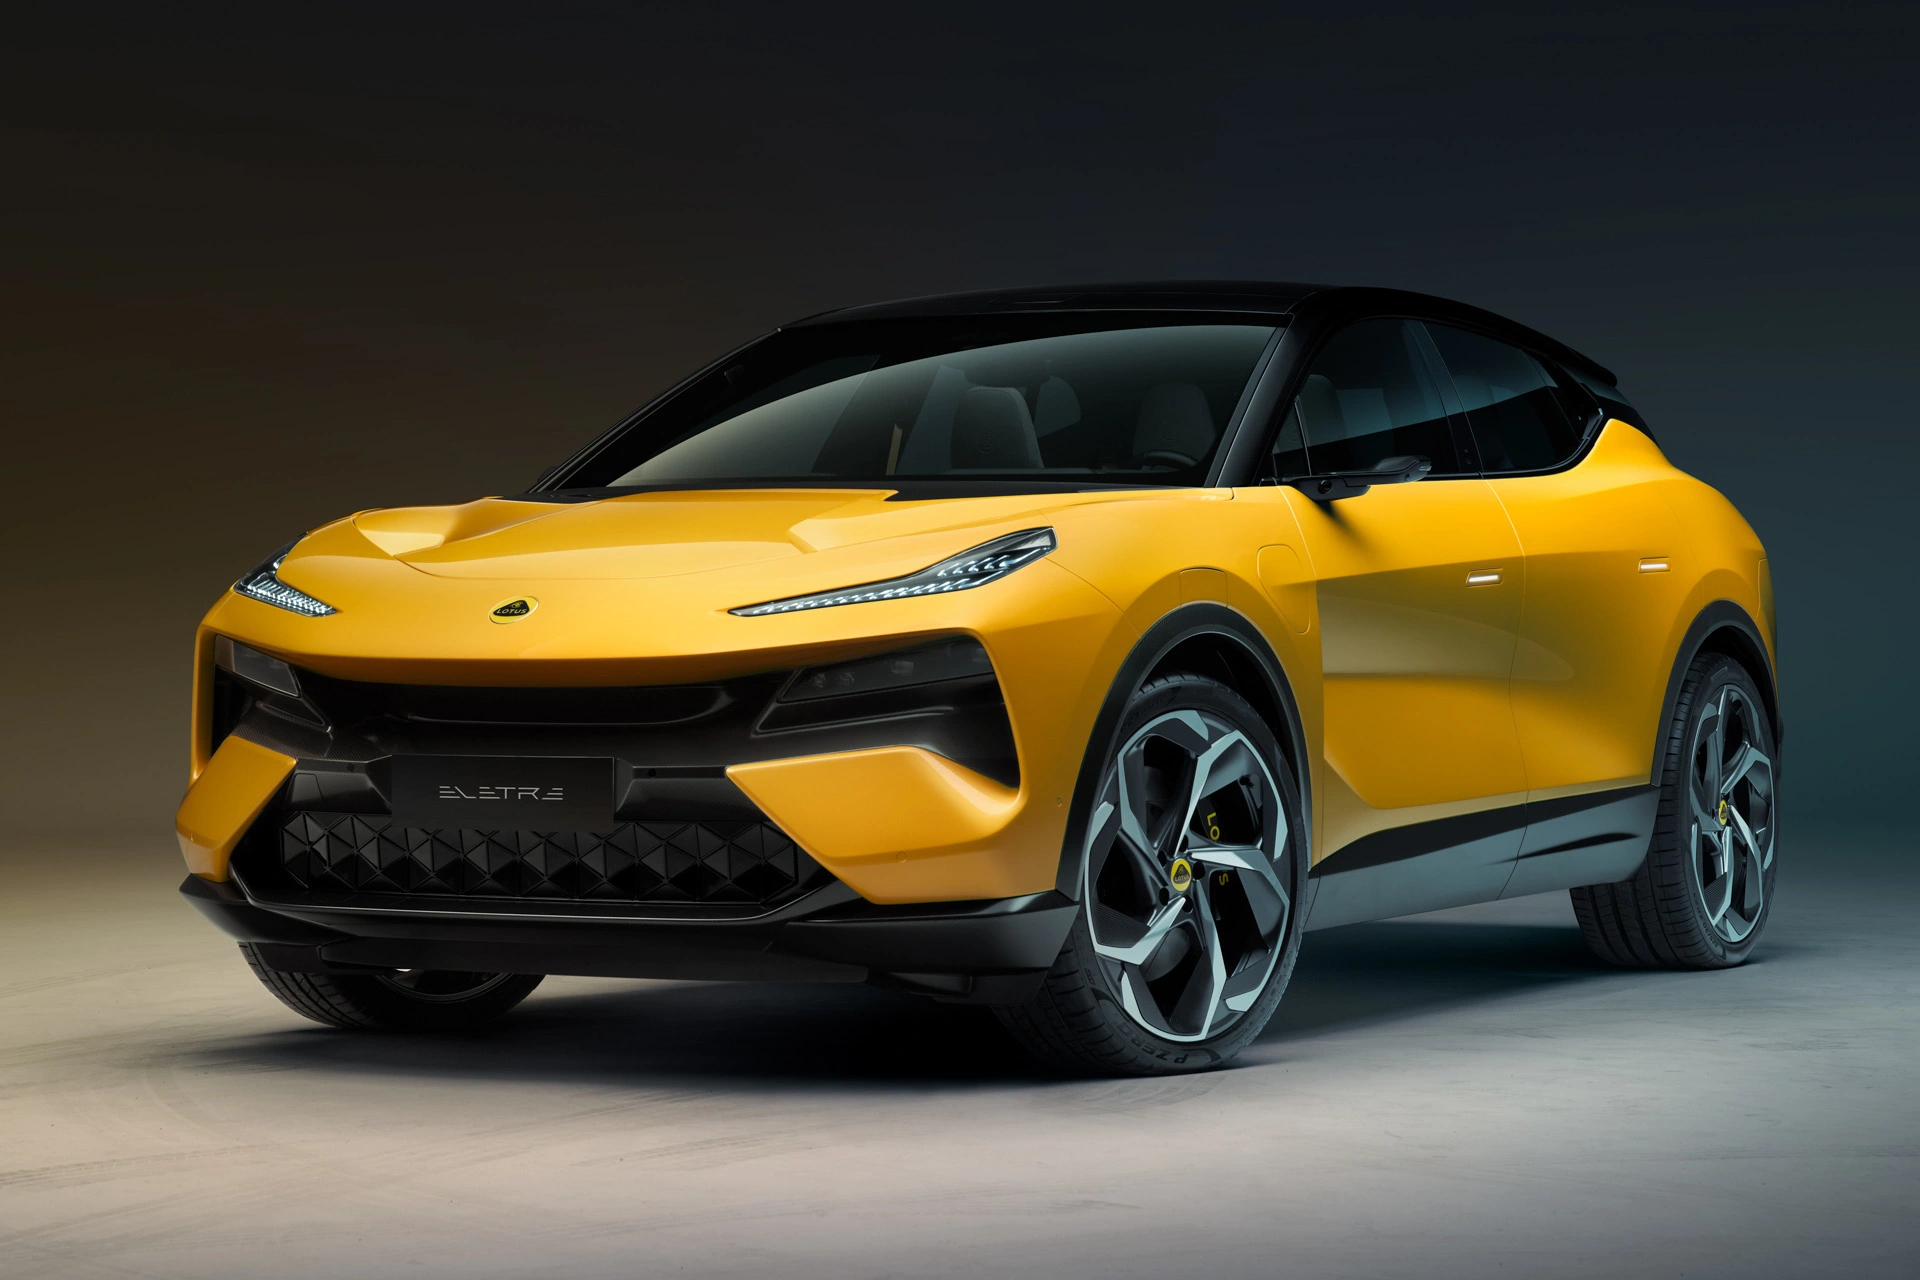 Ra mắt Lotus Eletre - SUV mang tham vọng thành 'Porsche của người Anh', giá bằng nửa Lamborghini Urus